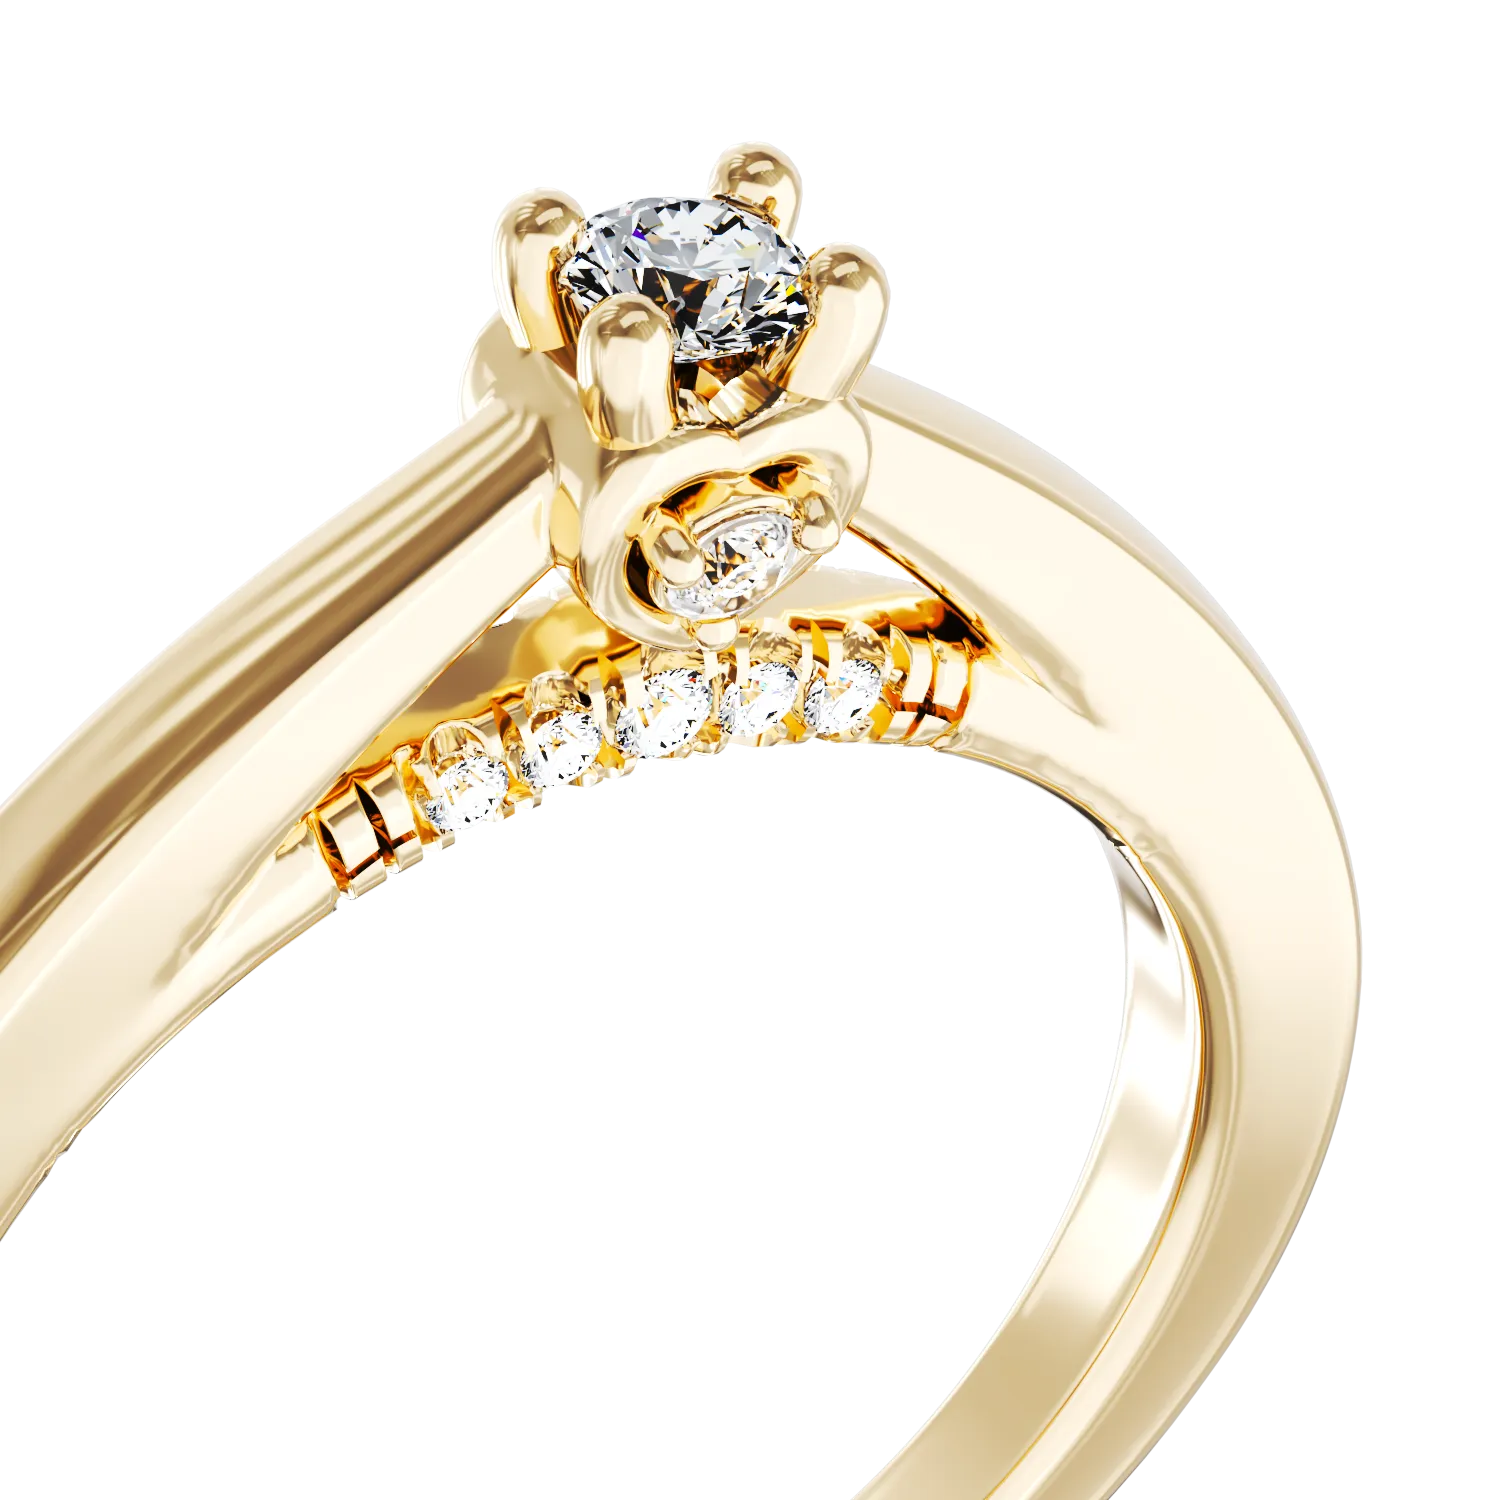 Eljegyzési gyűrű 18K-os sárga aranyból 0,12ct gyémánttal és 0,05ct gyémántokkal. Gramm: 2,58